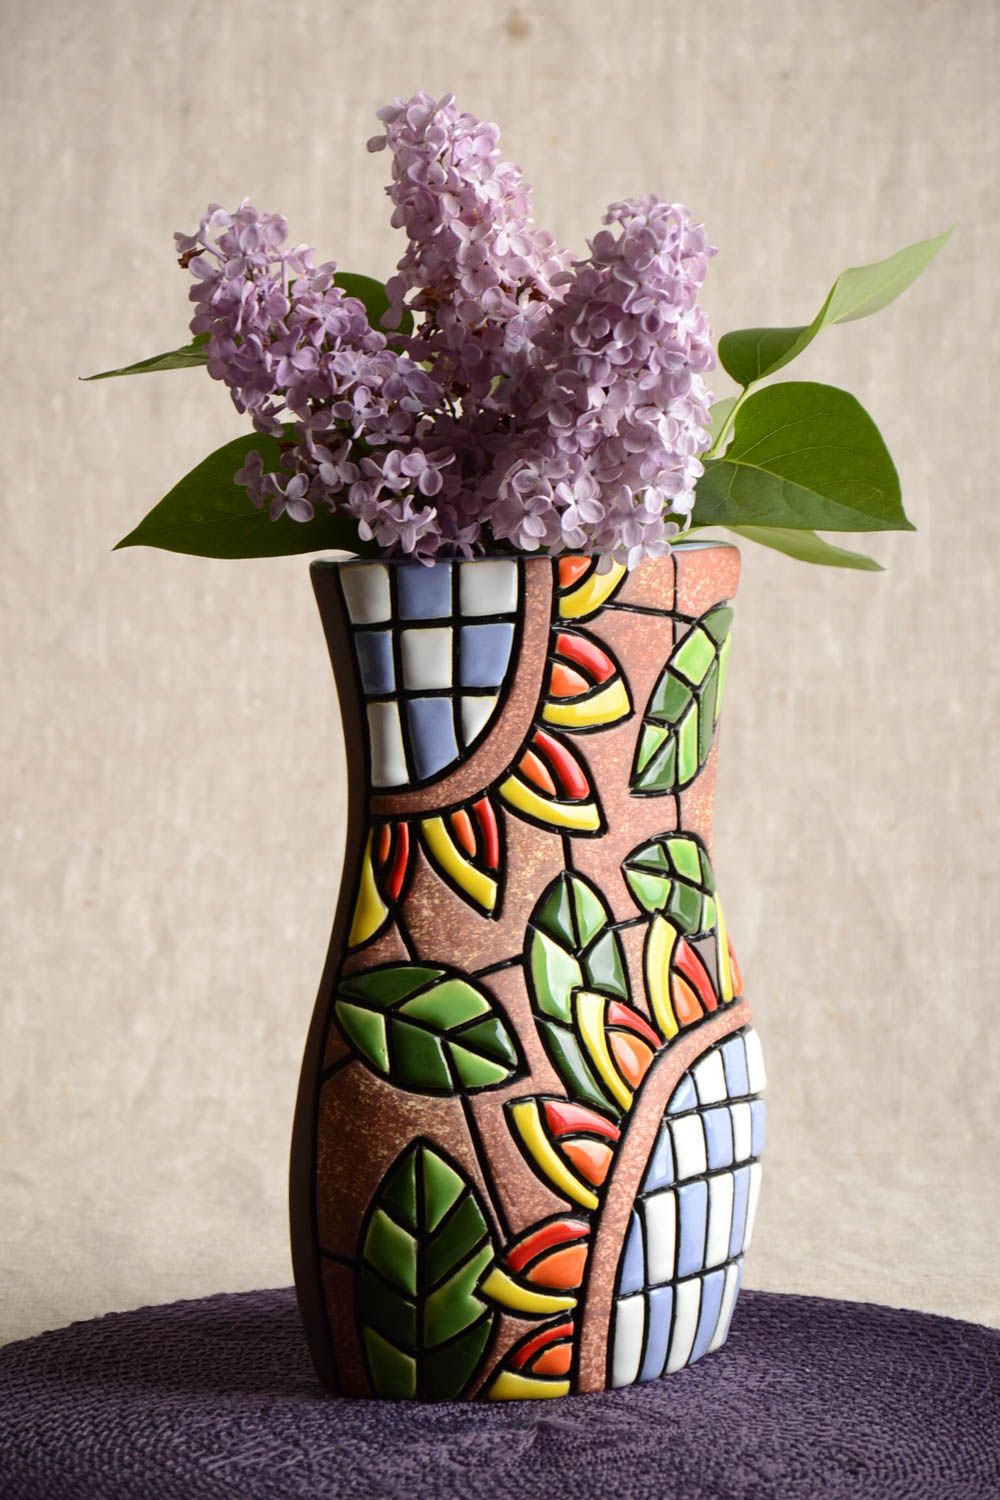 Полуфарфоровая ваза из глины ручной работы расписанная пигментами красивая 1.5 л фото 1